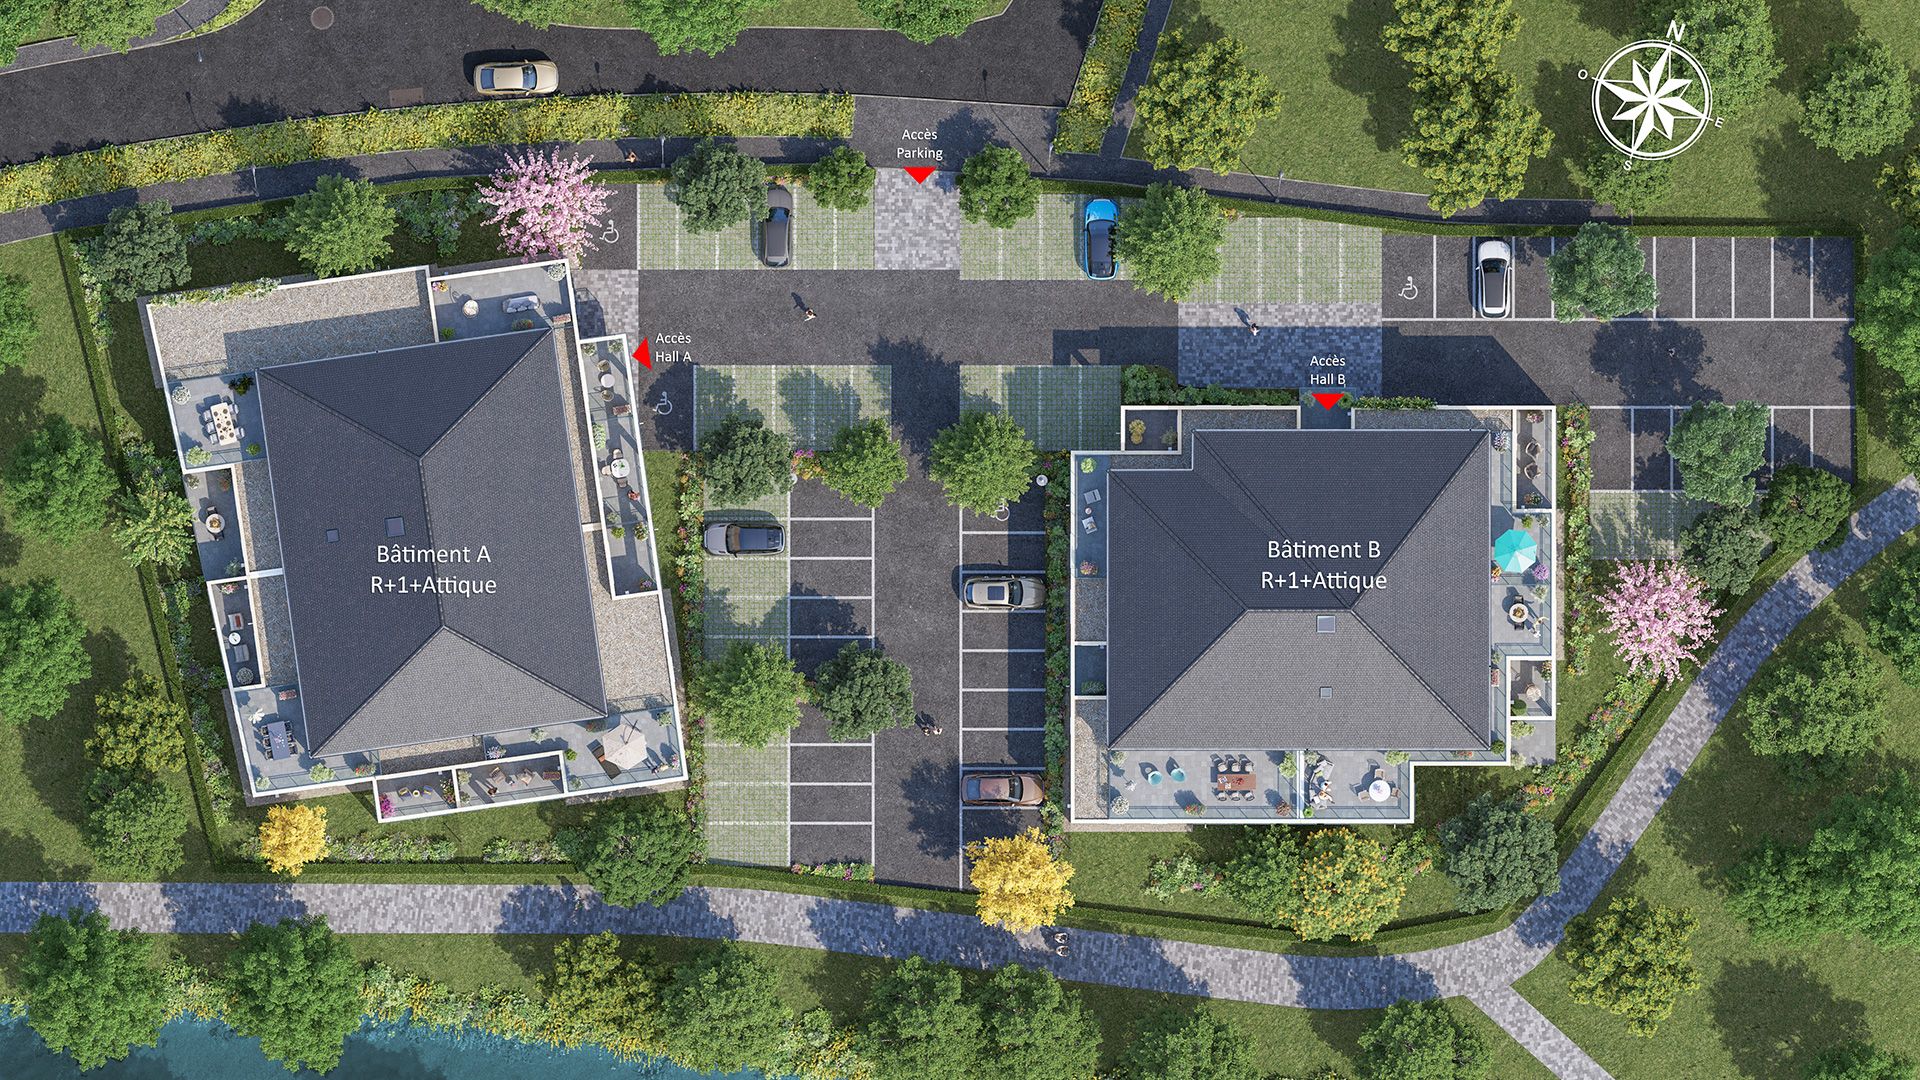 Concept Immobilier - Les Berges de Neptune - Appartements neufs à Terville - Plan de masse